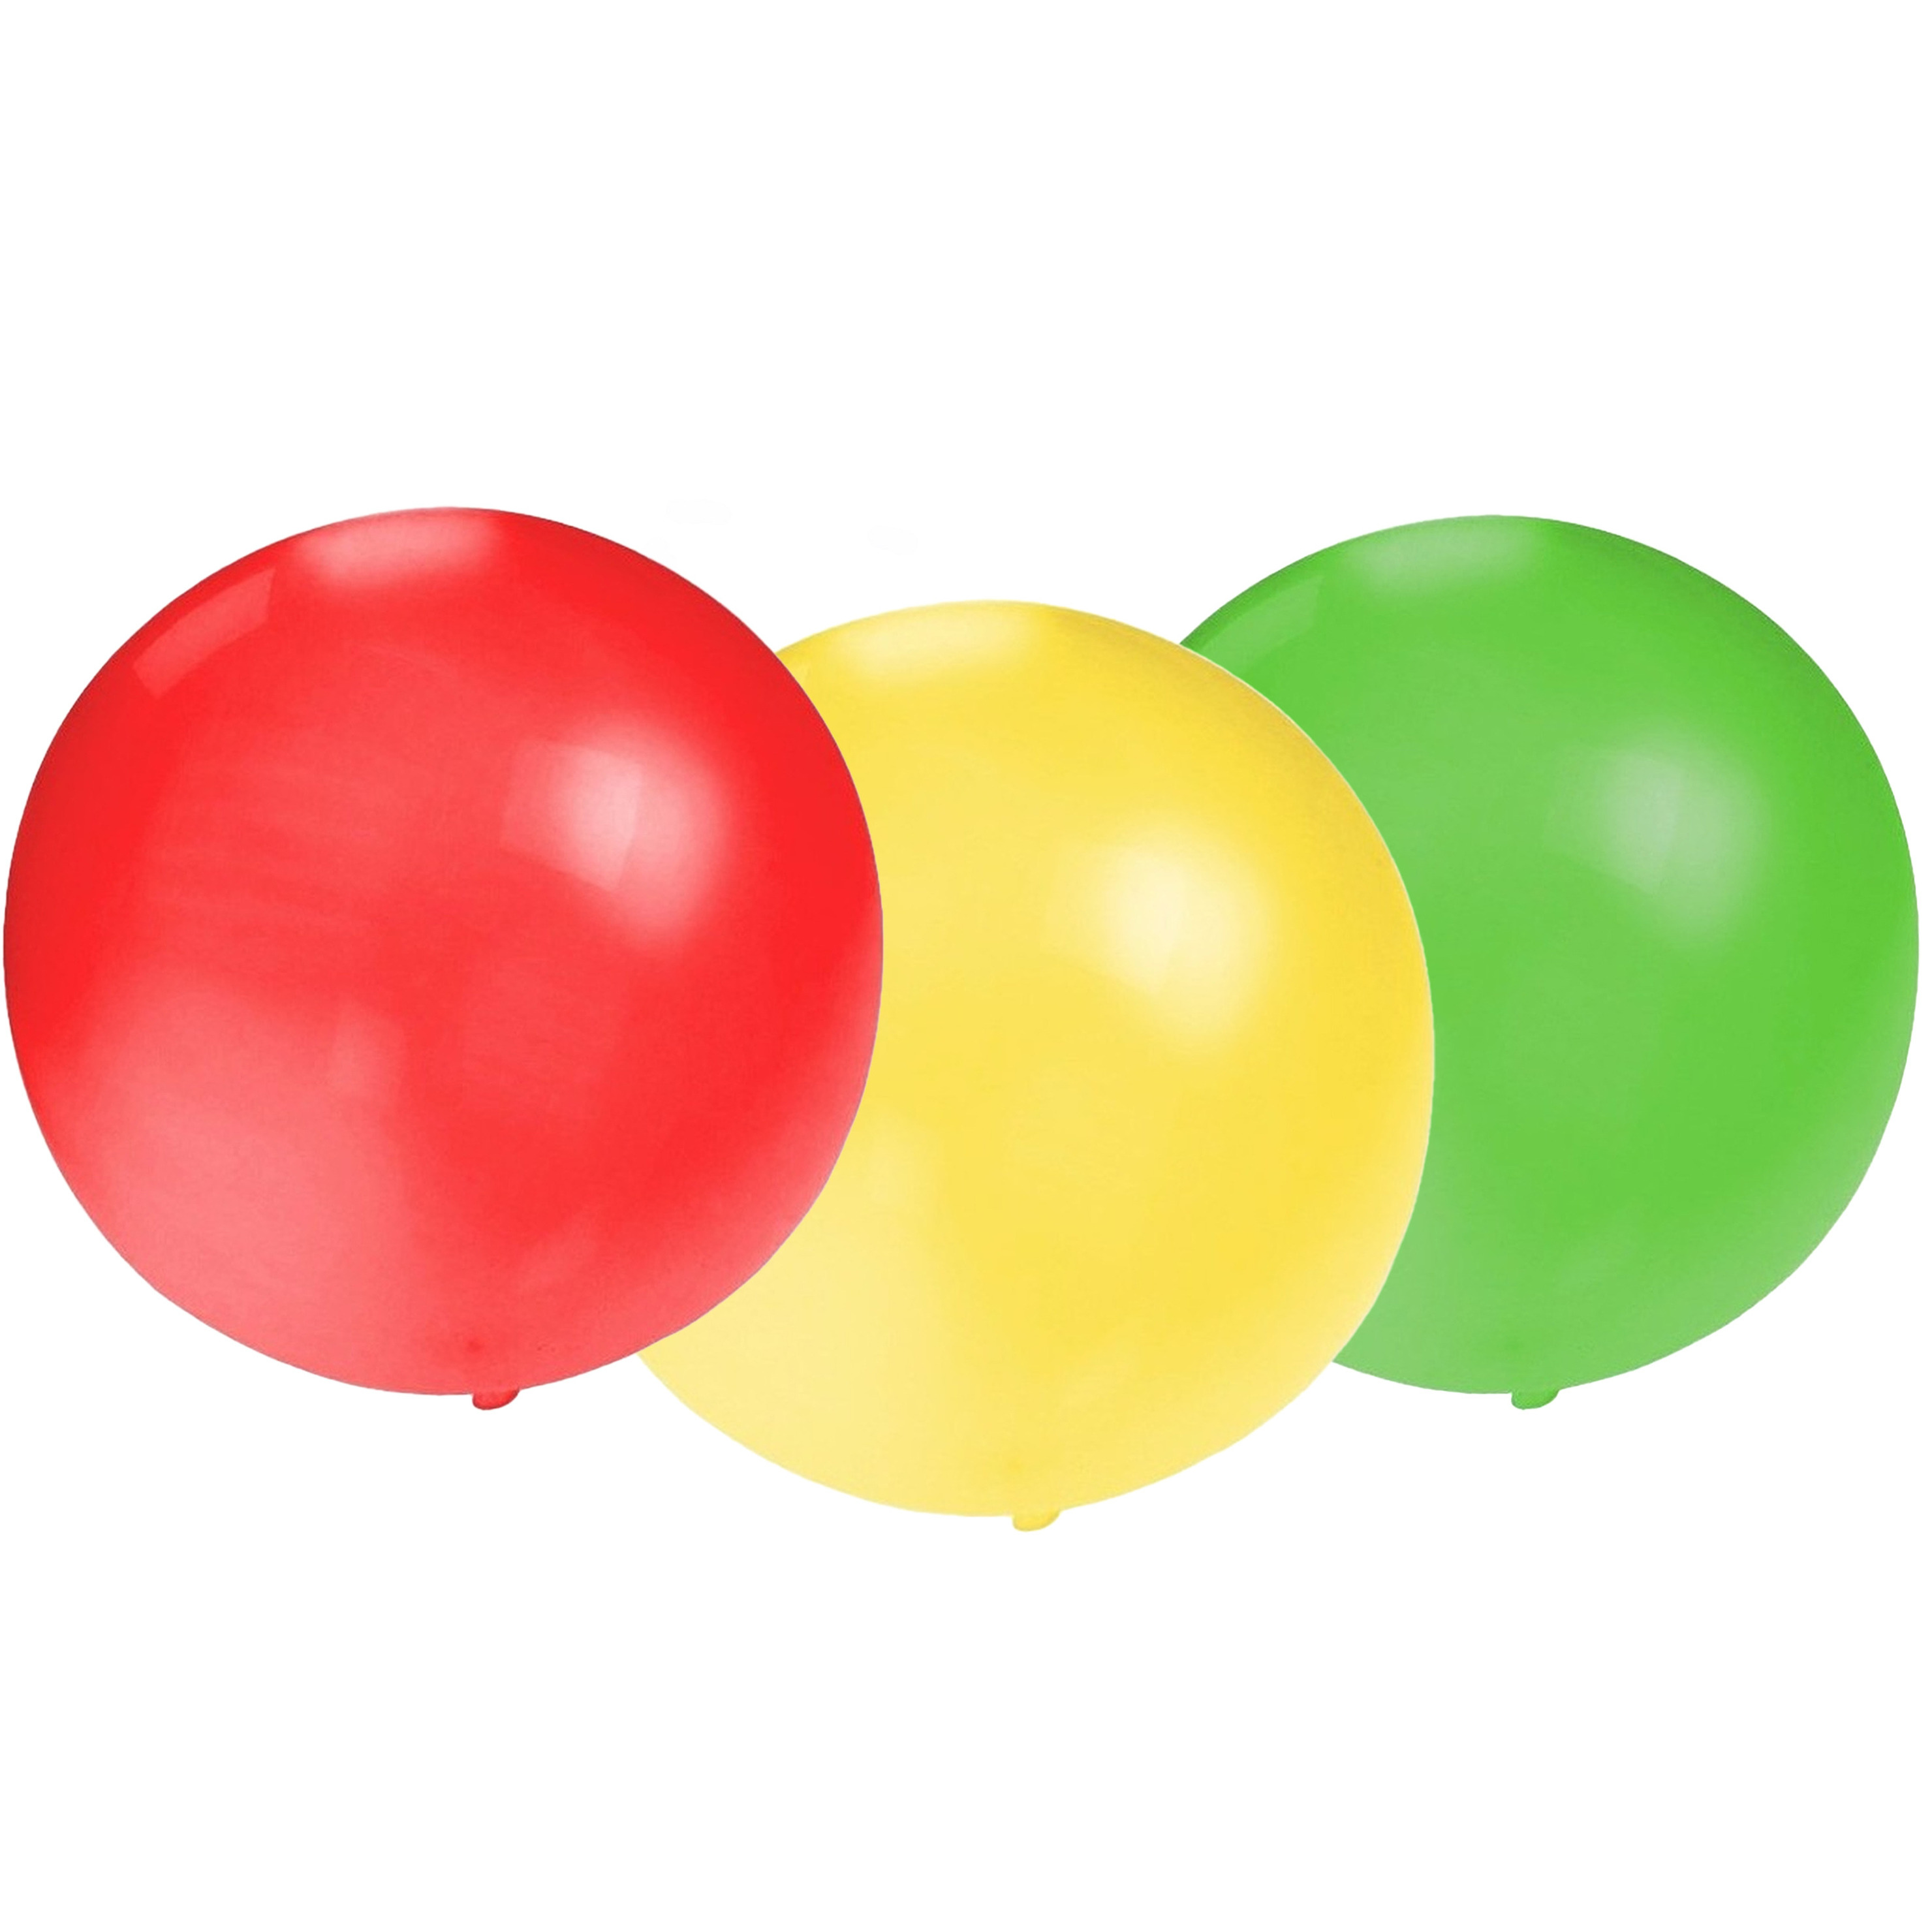 Bellatio Decorations 24x groot formaat ballonnen rood/groen/geel met diameter 60 cm -